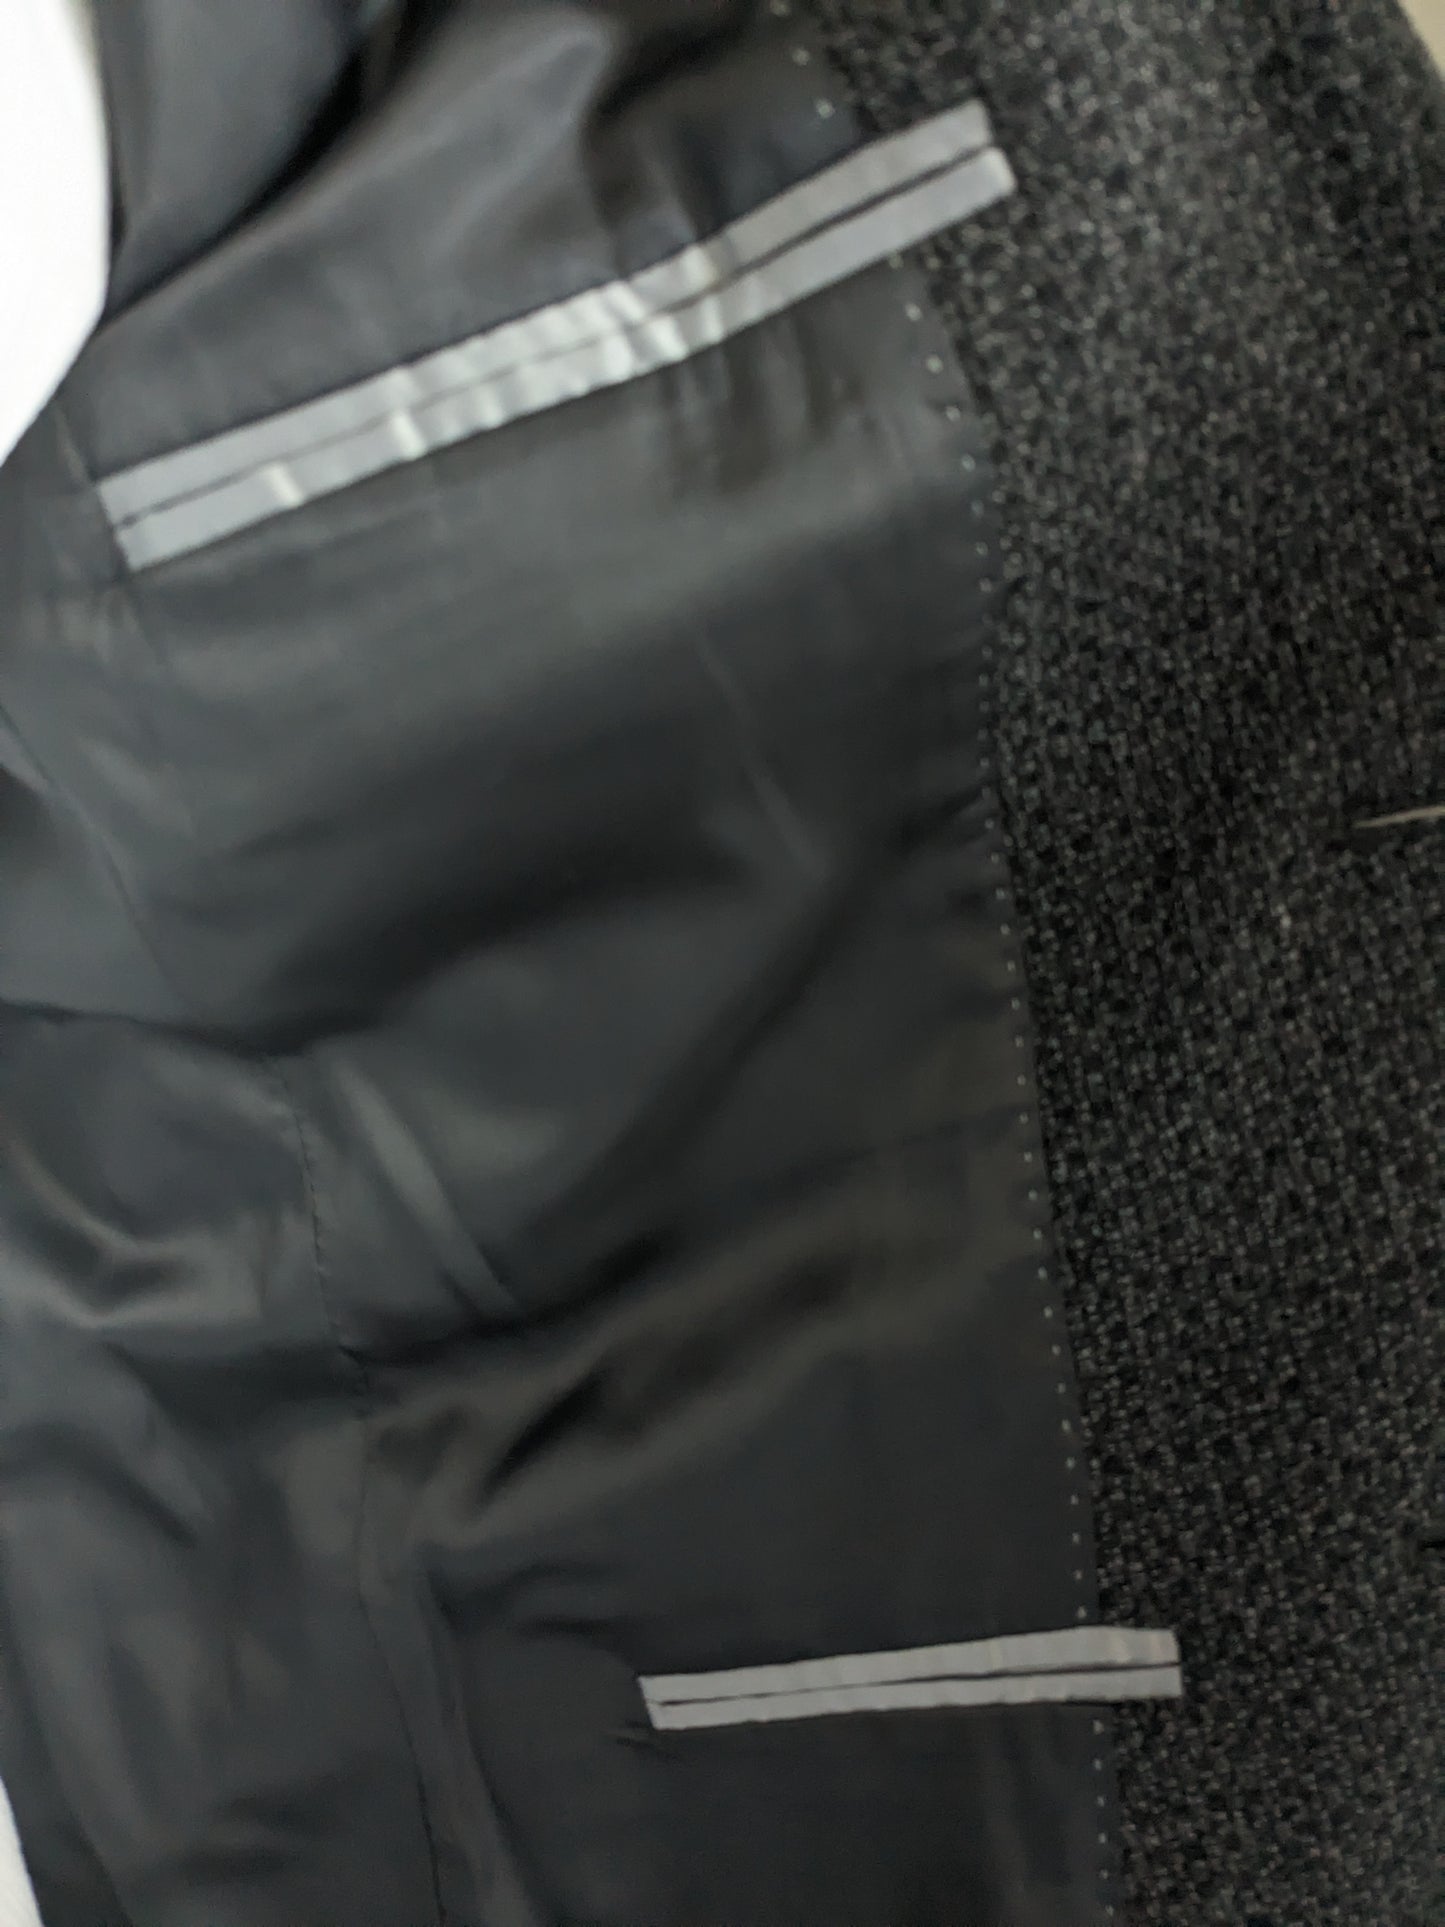 Giacca di lana Calvin Klein CK. Motivo misto nero grigio. Dimensione 50 / M. Slim Fit Line.